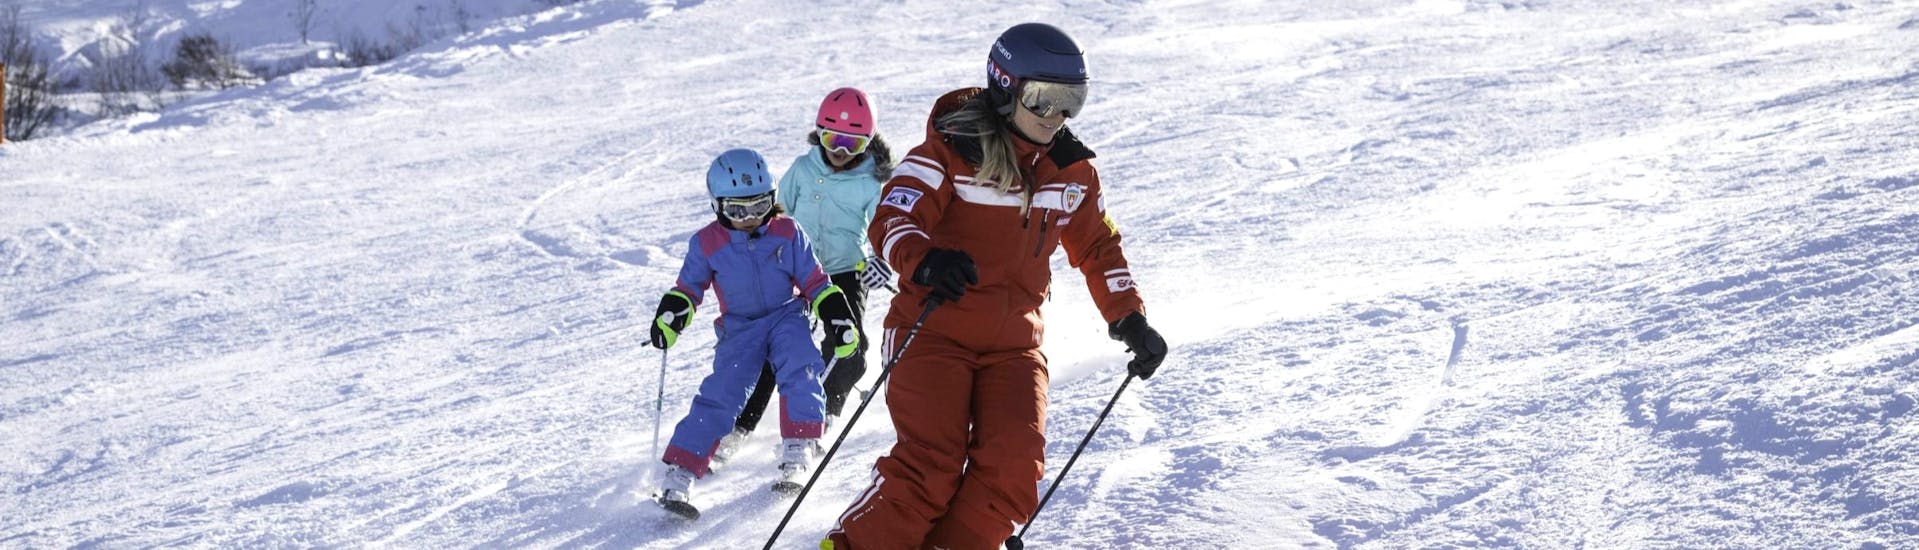 Lezioni private di sci per bambini a partire da 3 anni.